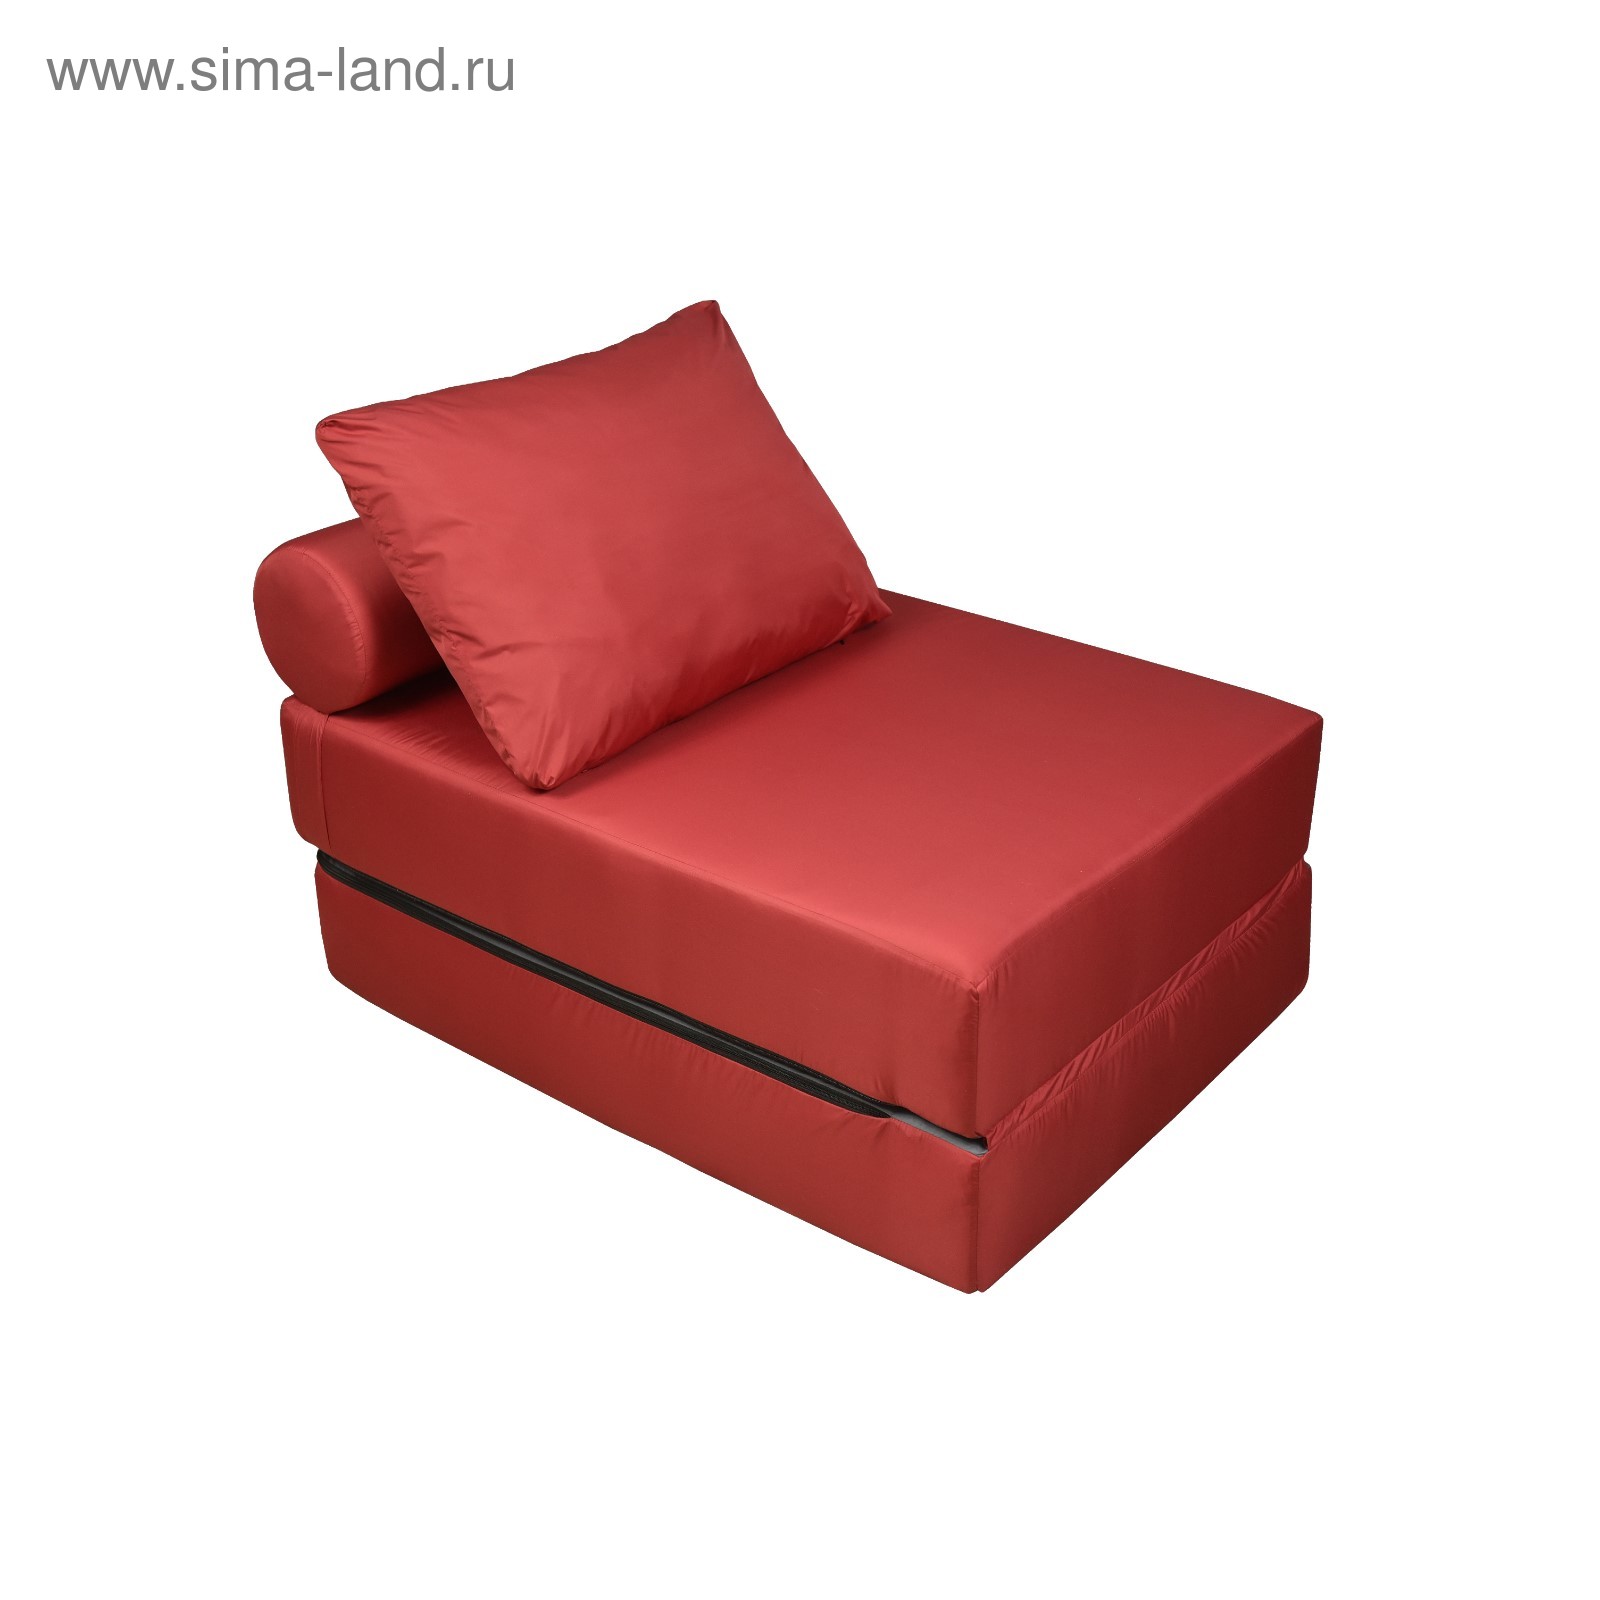 Кресло-кровать черри 70х80х75 см